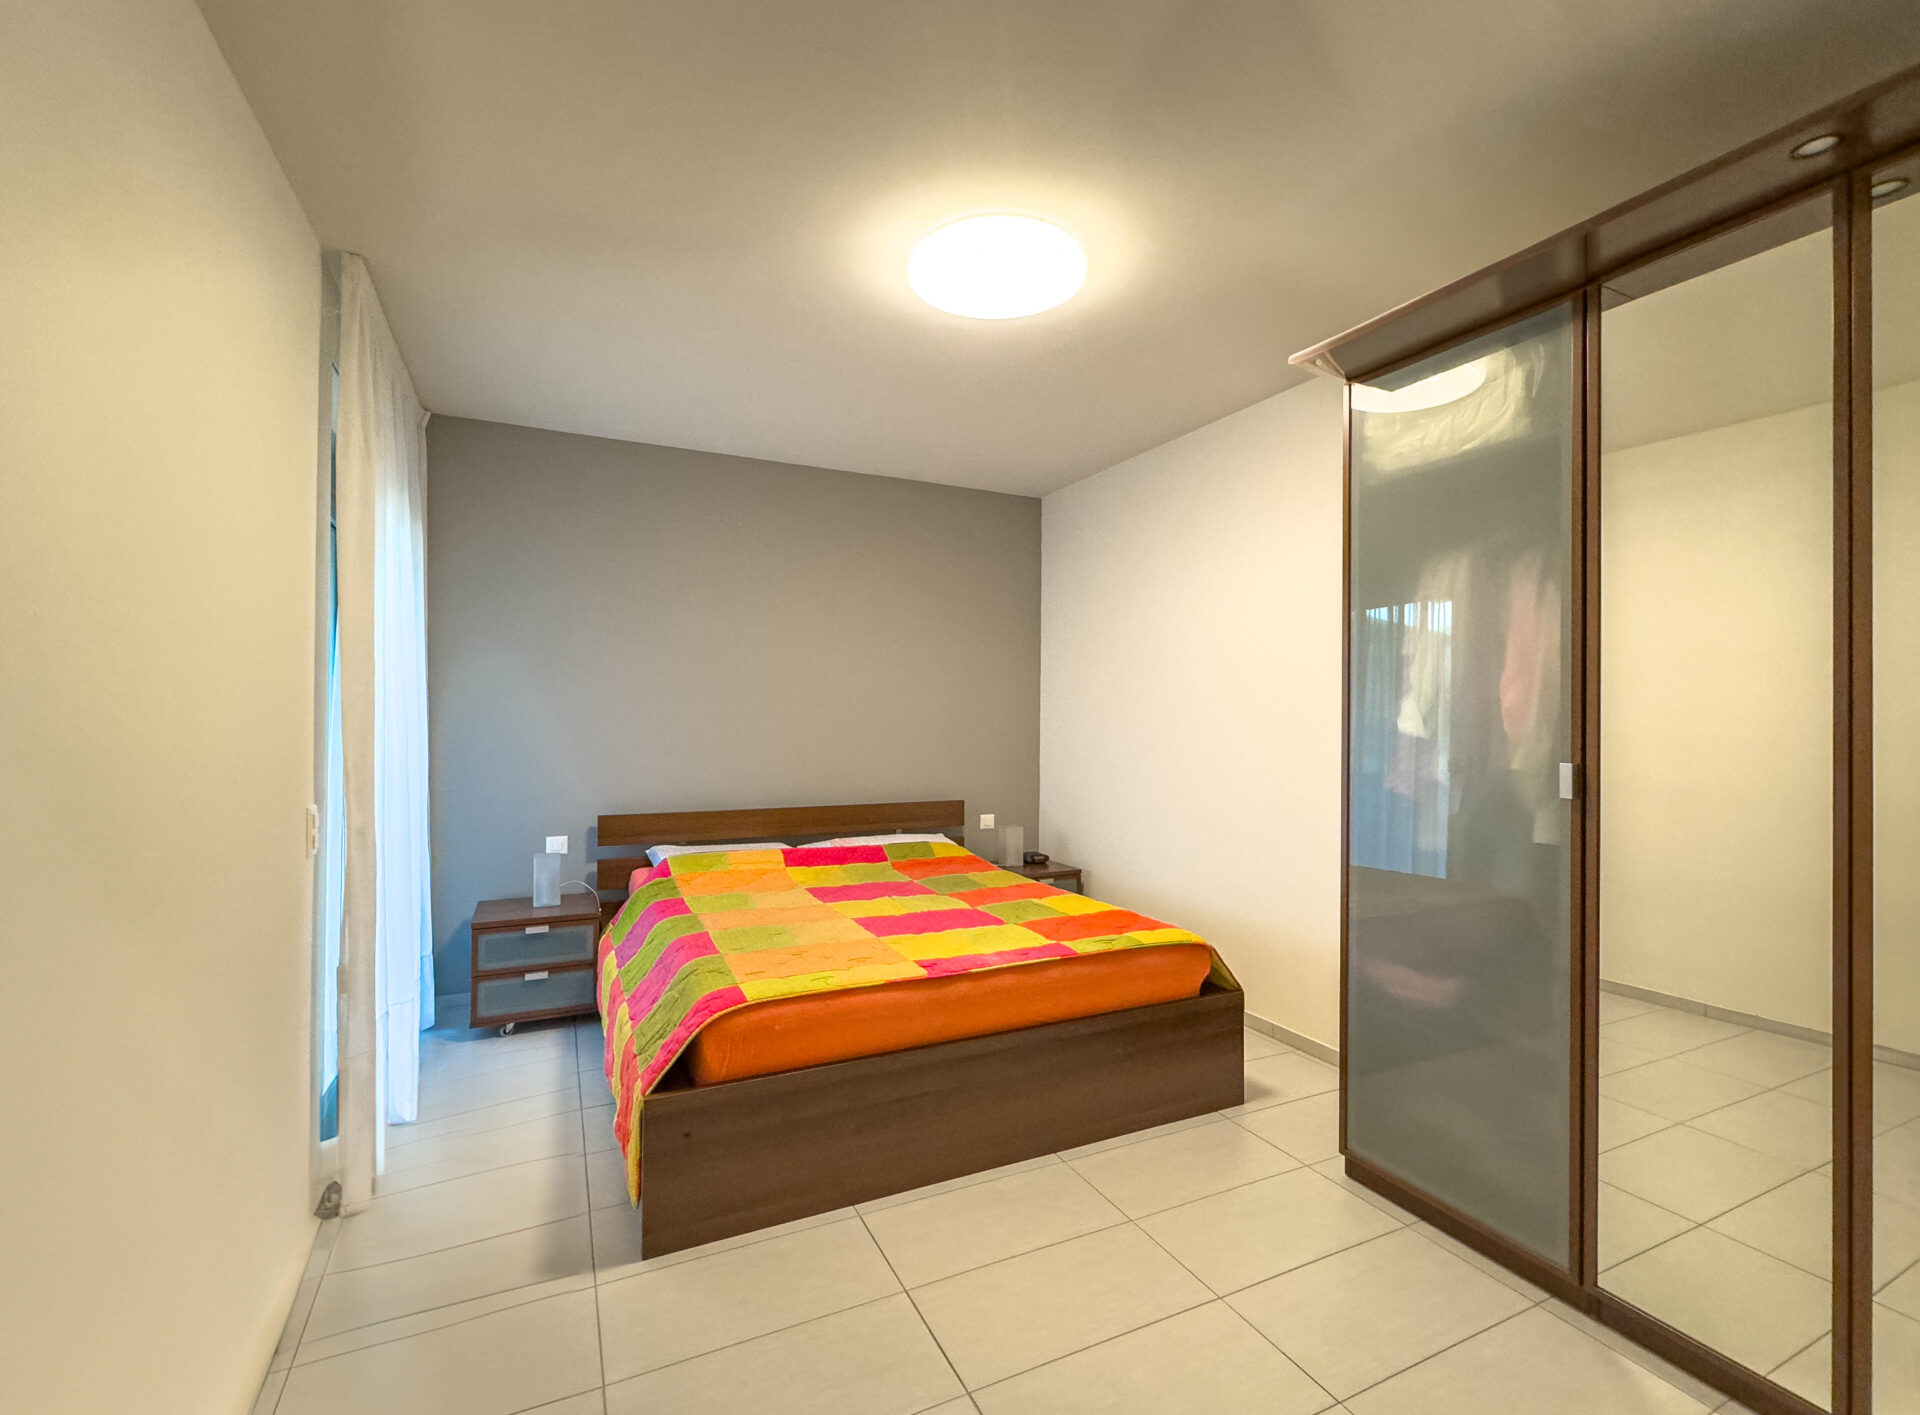 Geräumige und moderne 2,5-Zimmer-Wohnung in der Nähe des Zentrums von Lugano zu verkaufen